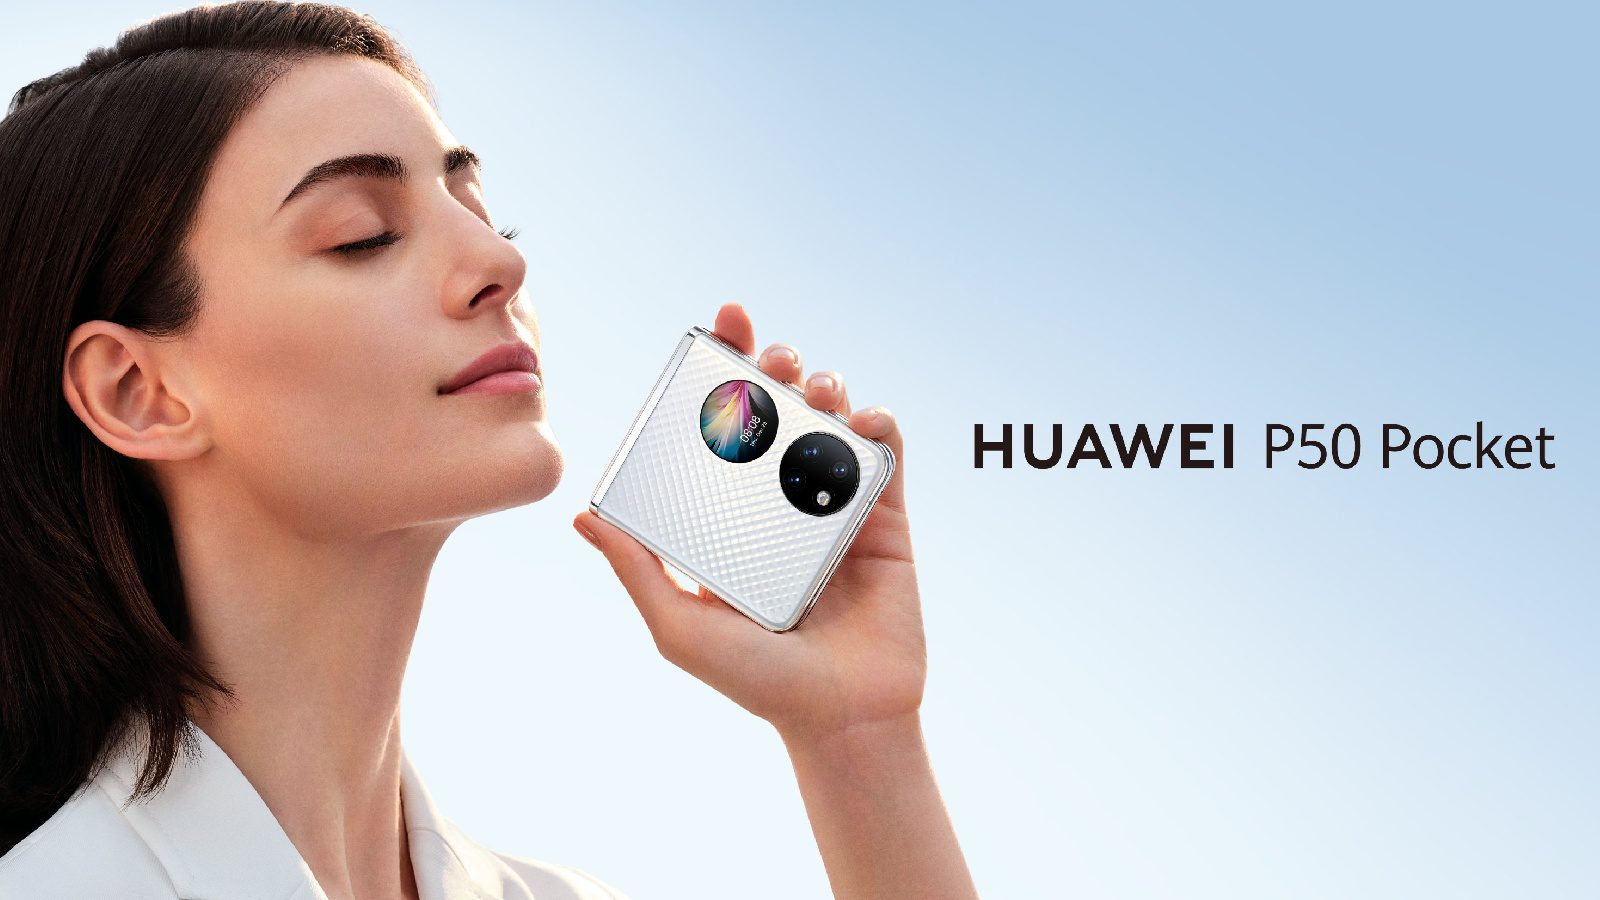 Официально представлен новый карманный смартфон Huawei P50 с 6,9-дюймовым сверхгибким экраном